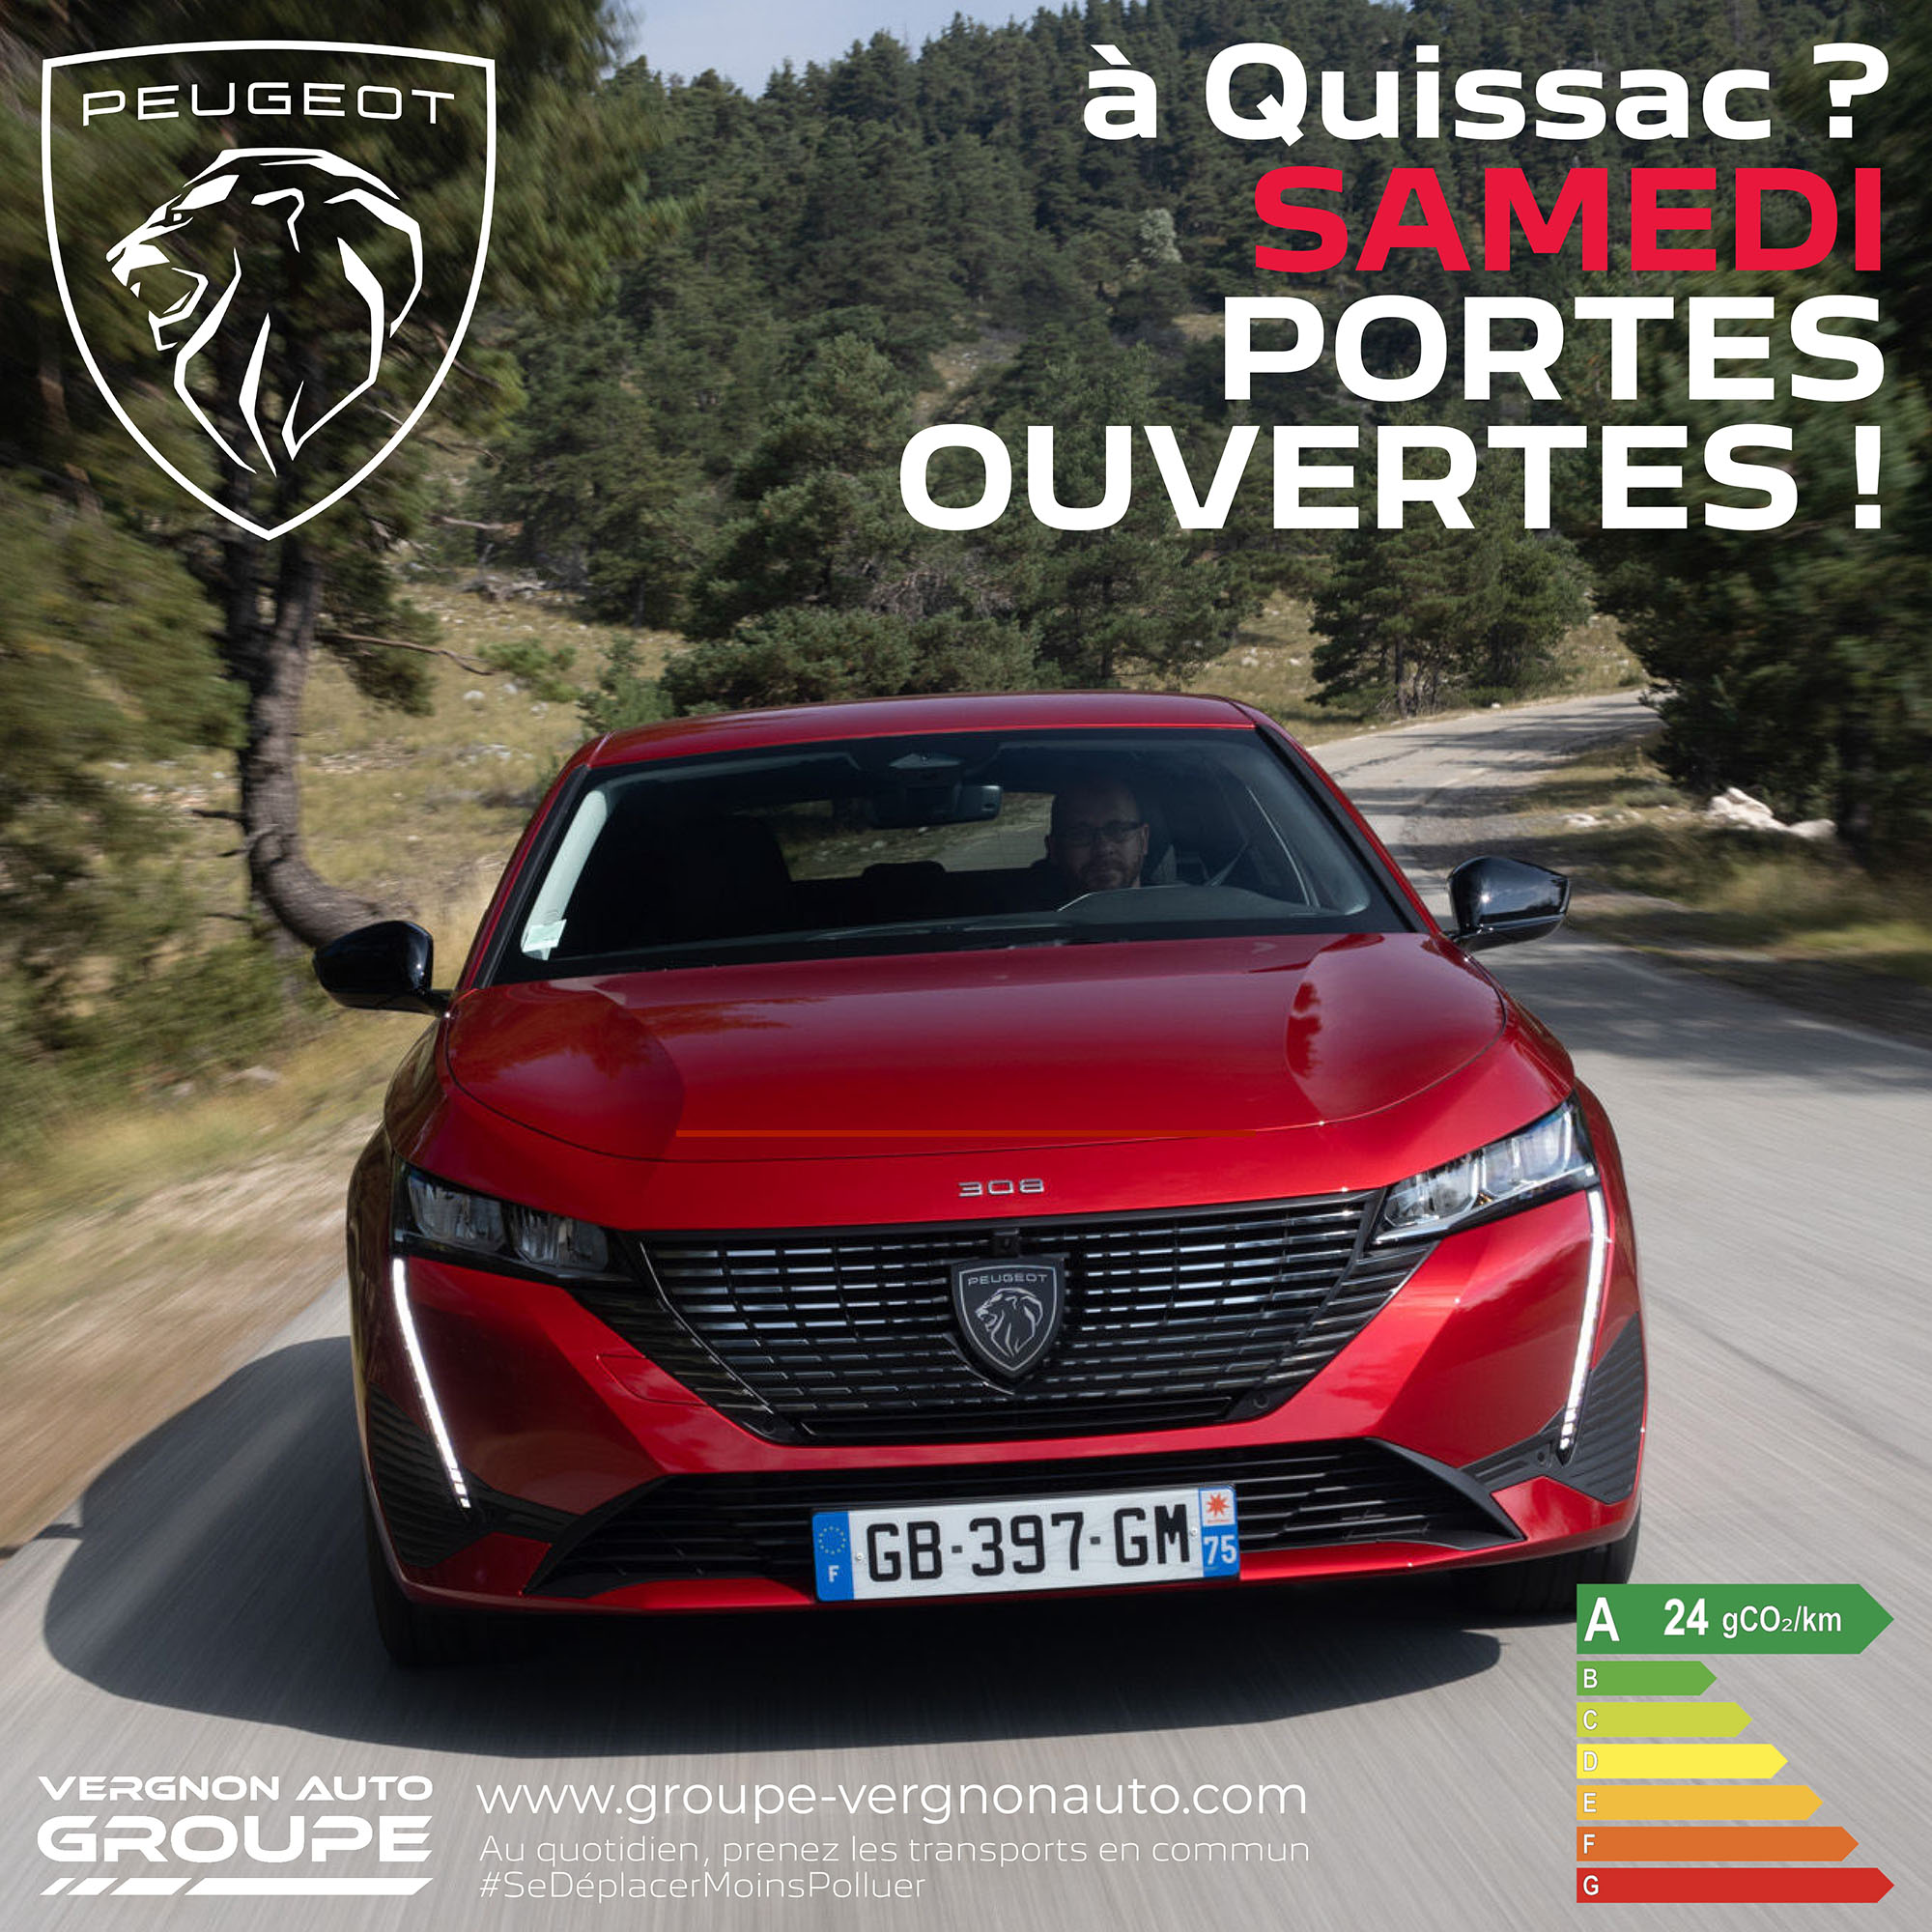 Samedi 14 octobre 2023, portes ouvertes Peugeot à Quissac, dans le Gard ! Neuf et occasion, venez découvrir nos offres !